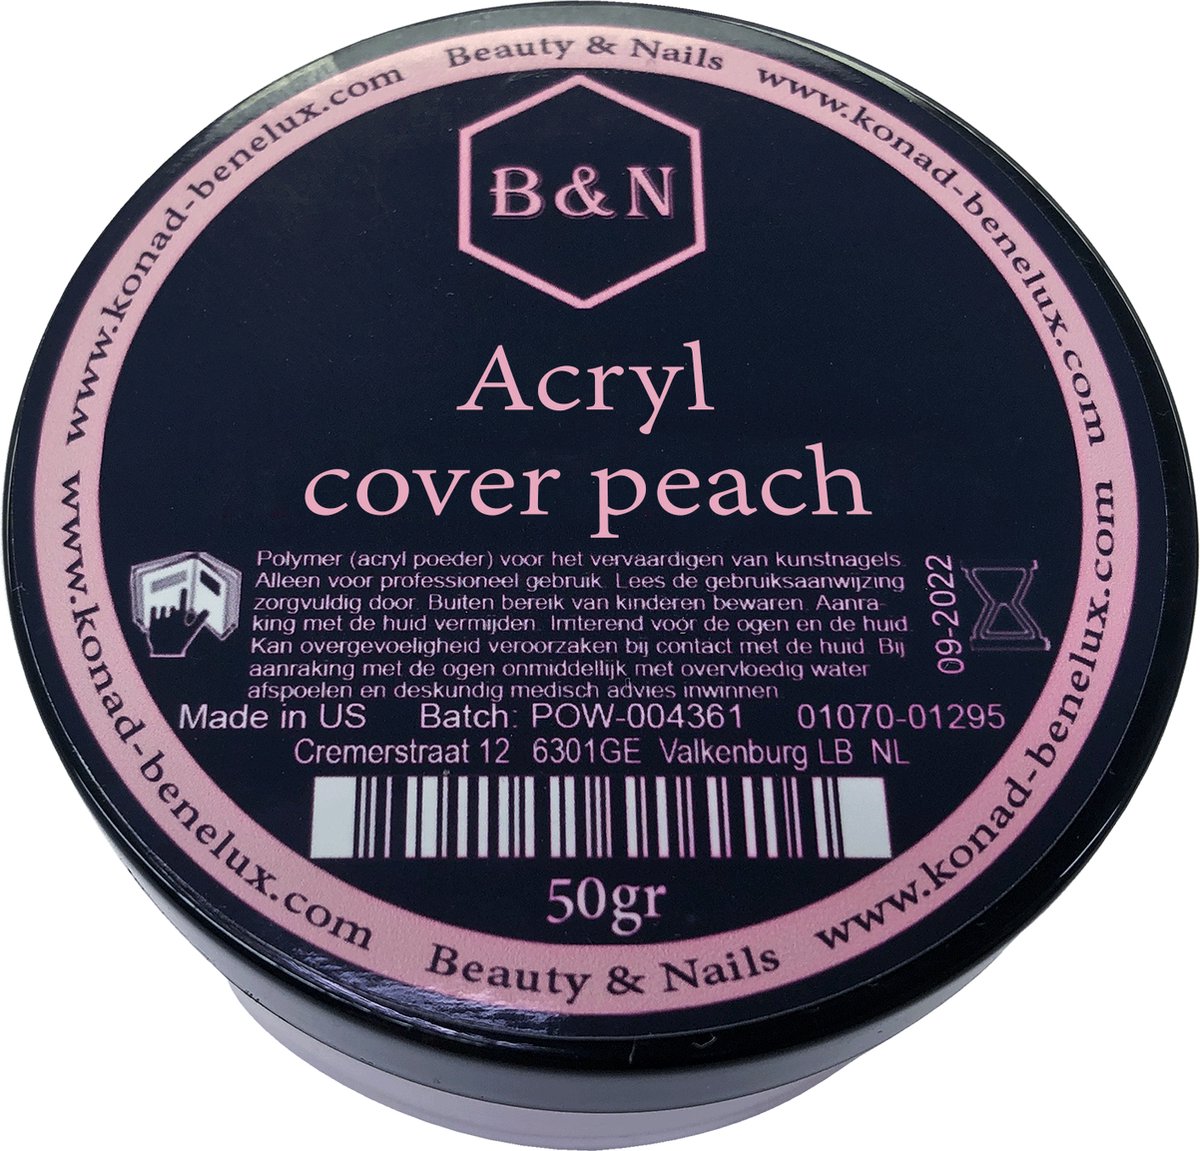 Acryl - cover peach - 50 gr | B&N - acrylpoeder -